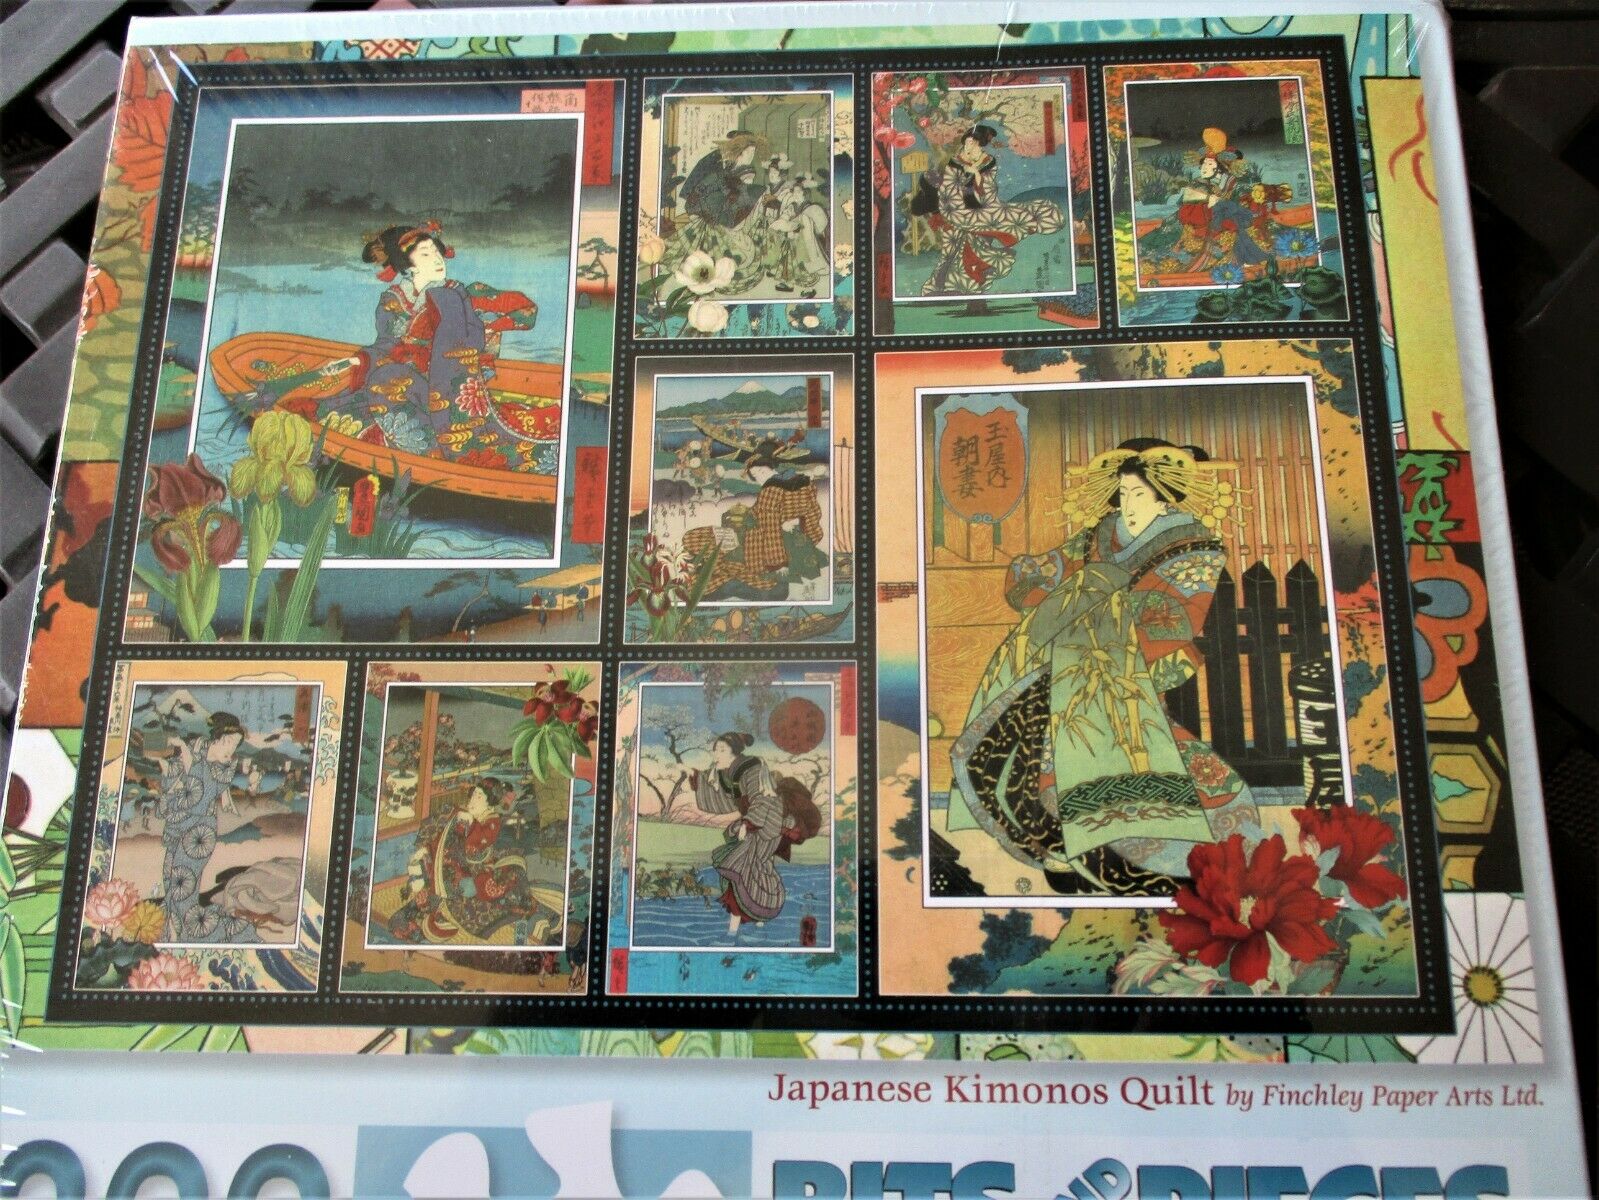 Bits 300 Piece Puzzle "japanese Kimonos Quilt" Large Pieces New 18"x24"